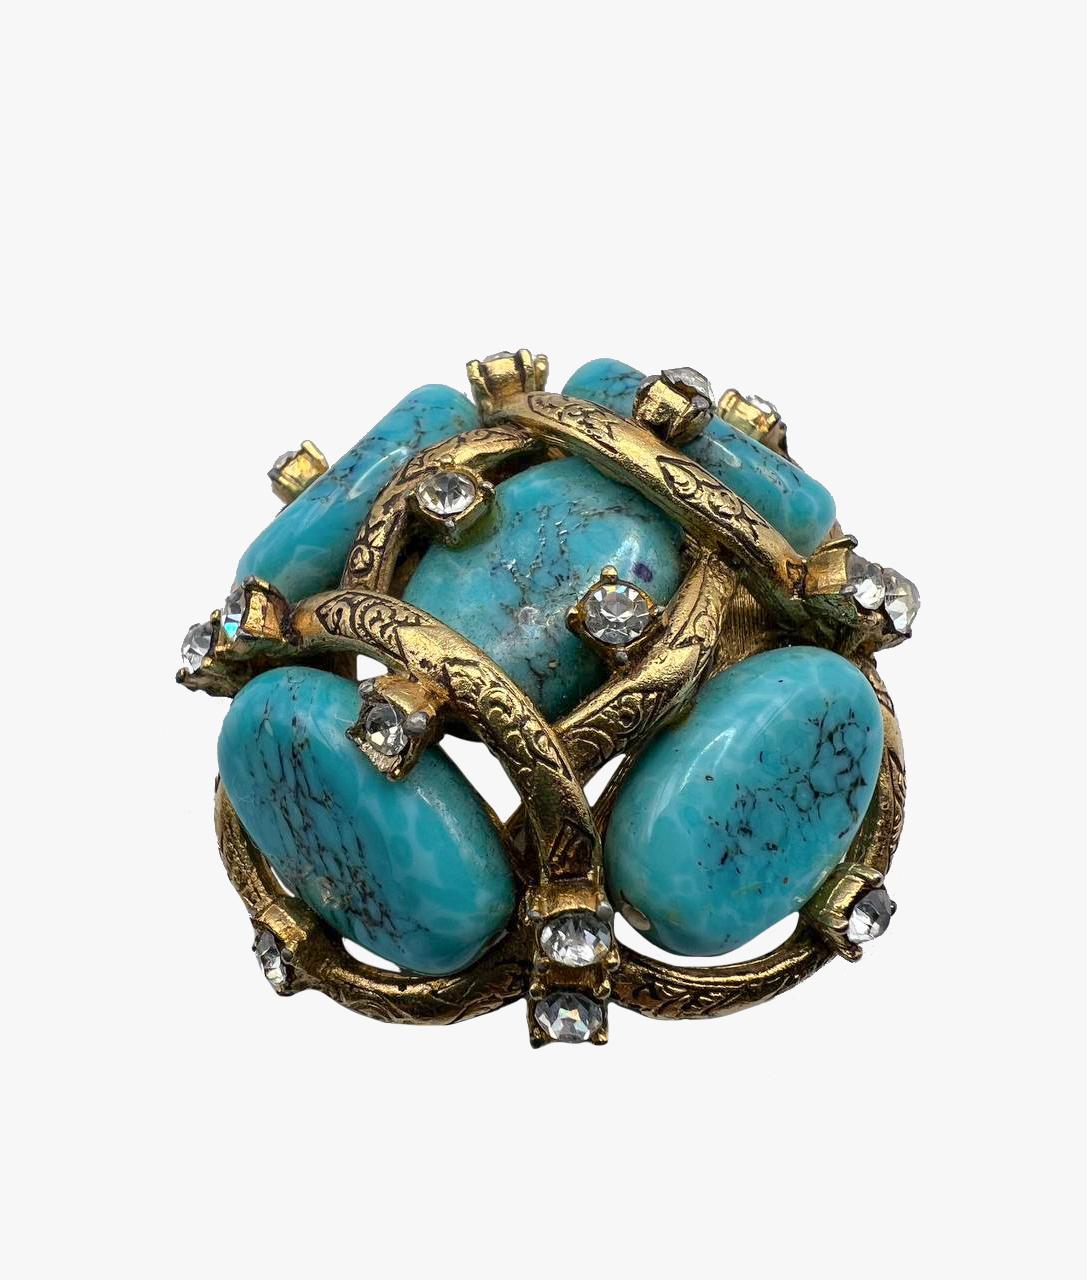 Superbe broche avec une grappe de turquoises, réalisée par Robert Goossens  in 1961.

Perles de pate de verre faites à la main pour simuler une matrice de turquoise serties dans une toile de bronze doré parsemée de pâtes.

Dimensions -  4,8 x 4,8